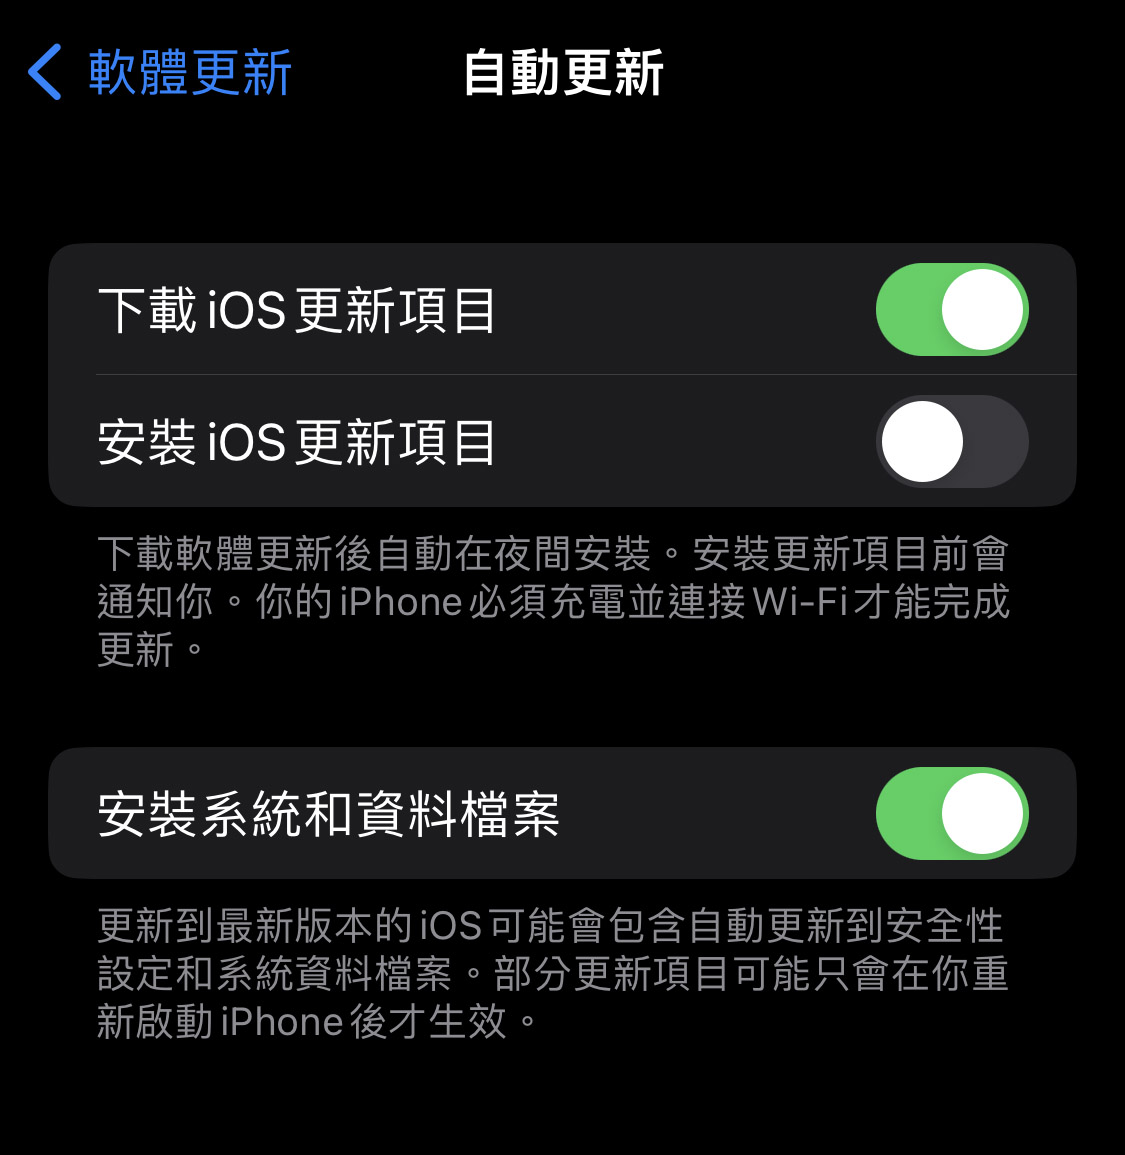 安全修復不需要在 iOS 16 中完整更新，將可自動安裝 | iOS 16, iOS更新, iPadOS 16, 安裝系統和資料檔案, 更新iPhone | iPhone News 愛瘋了